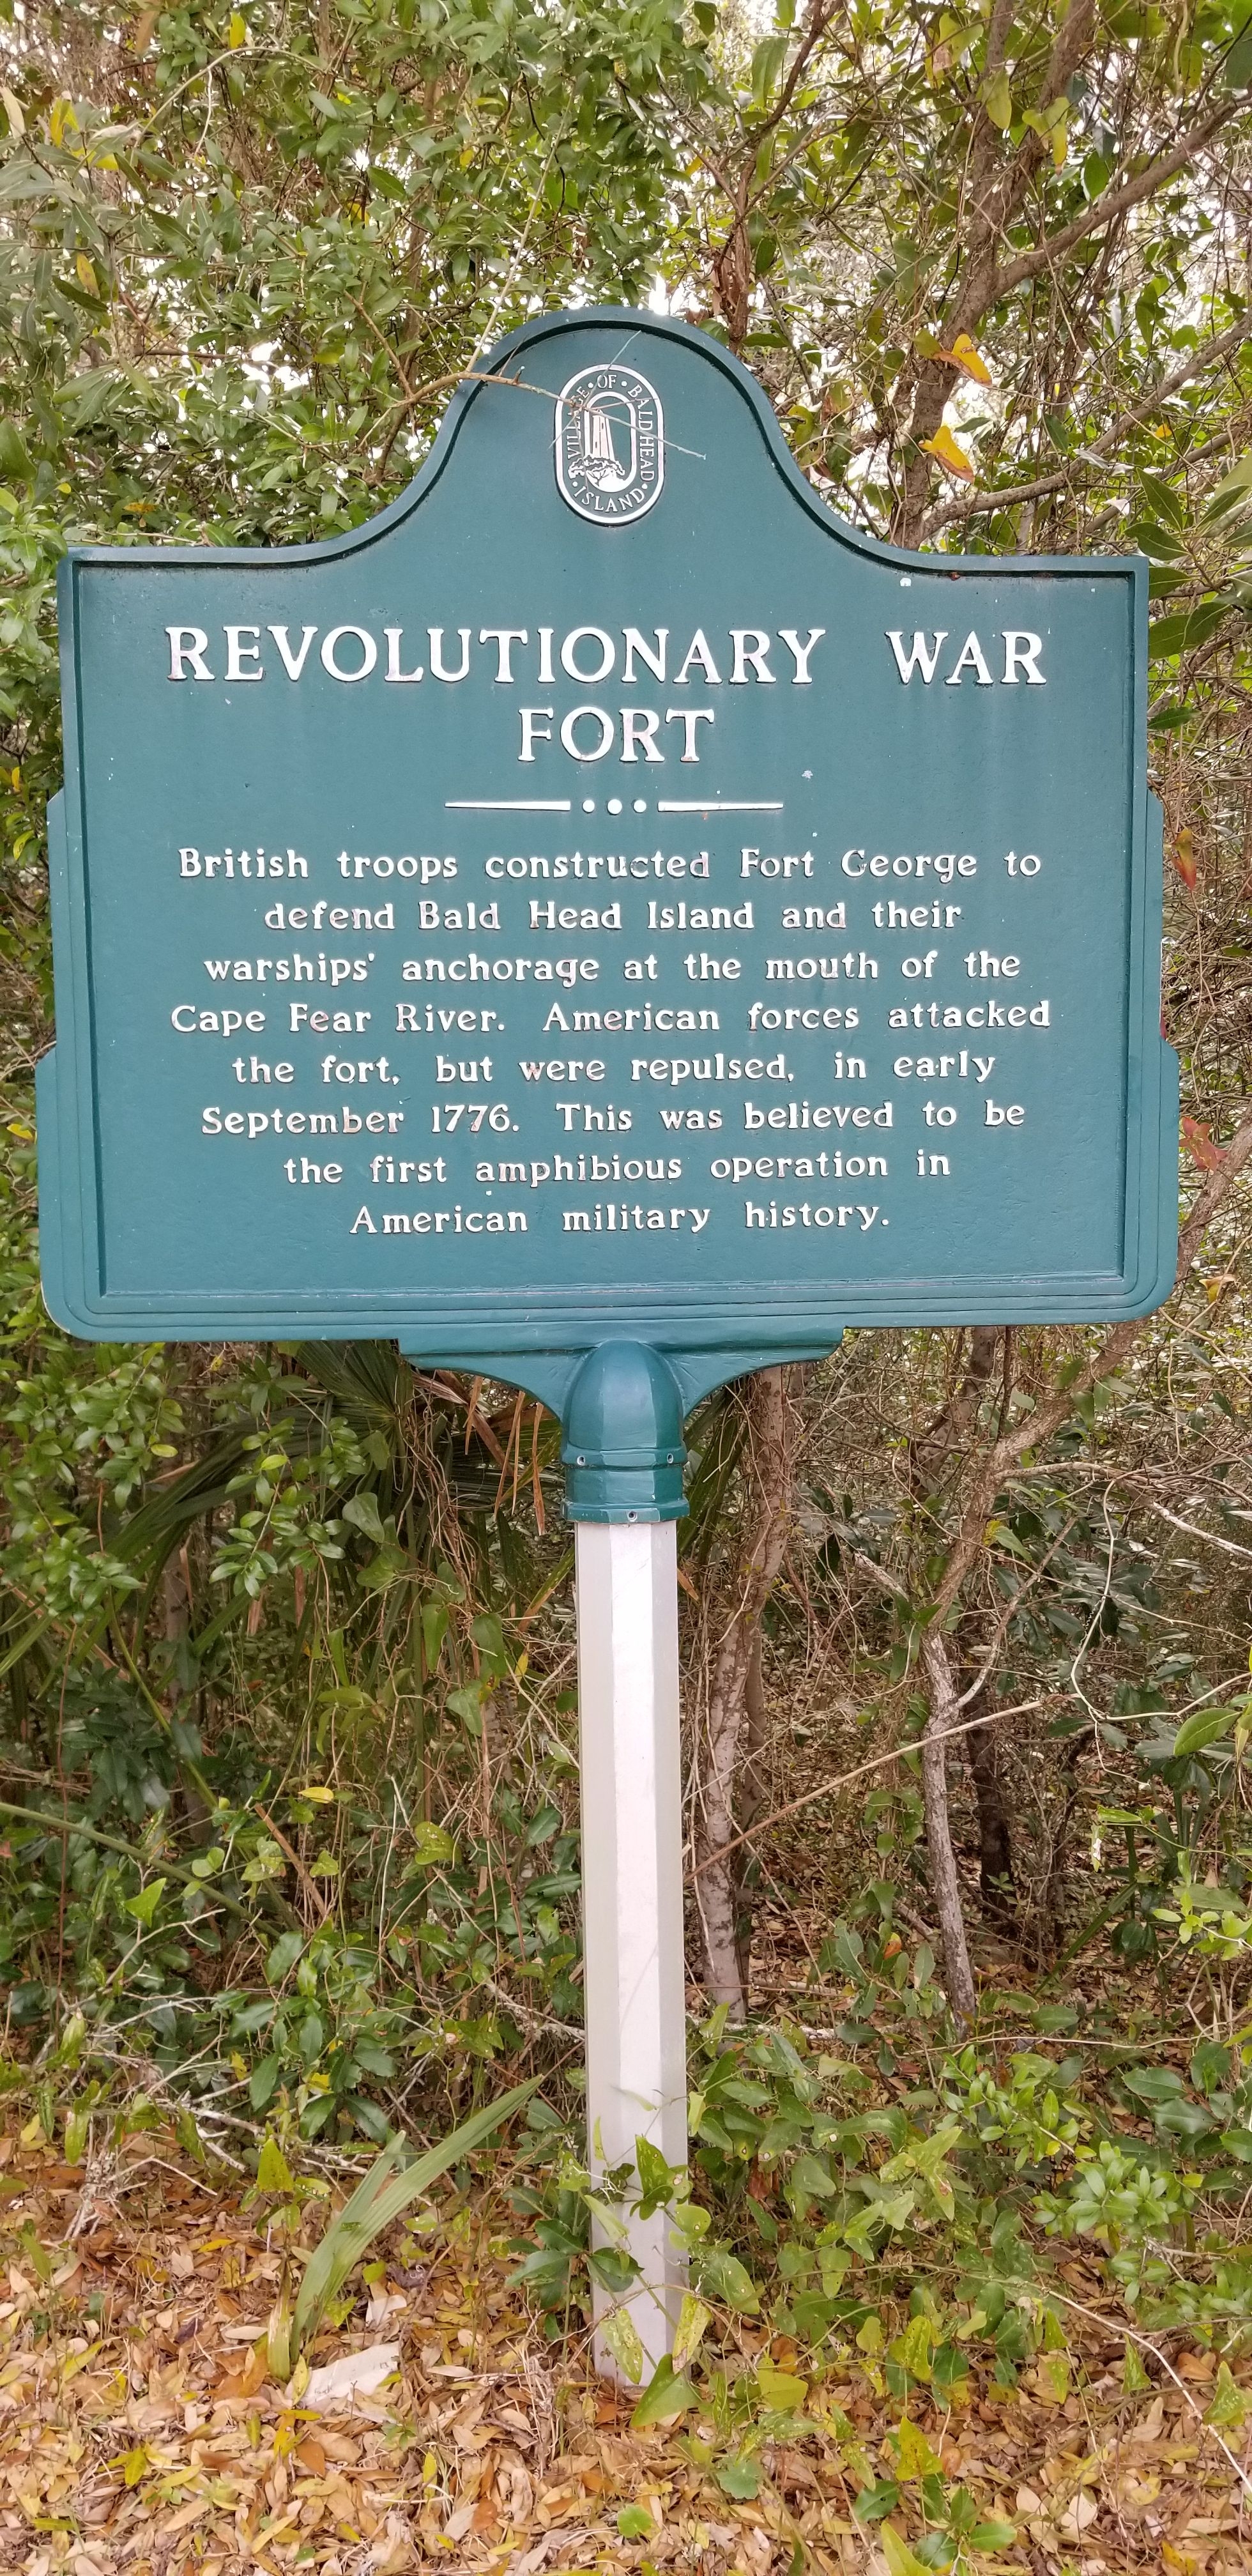 Revolutionary War Fort Marker